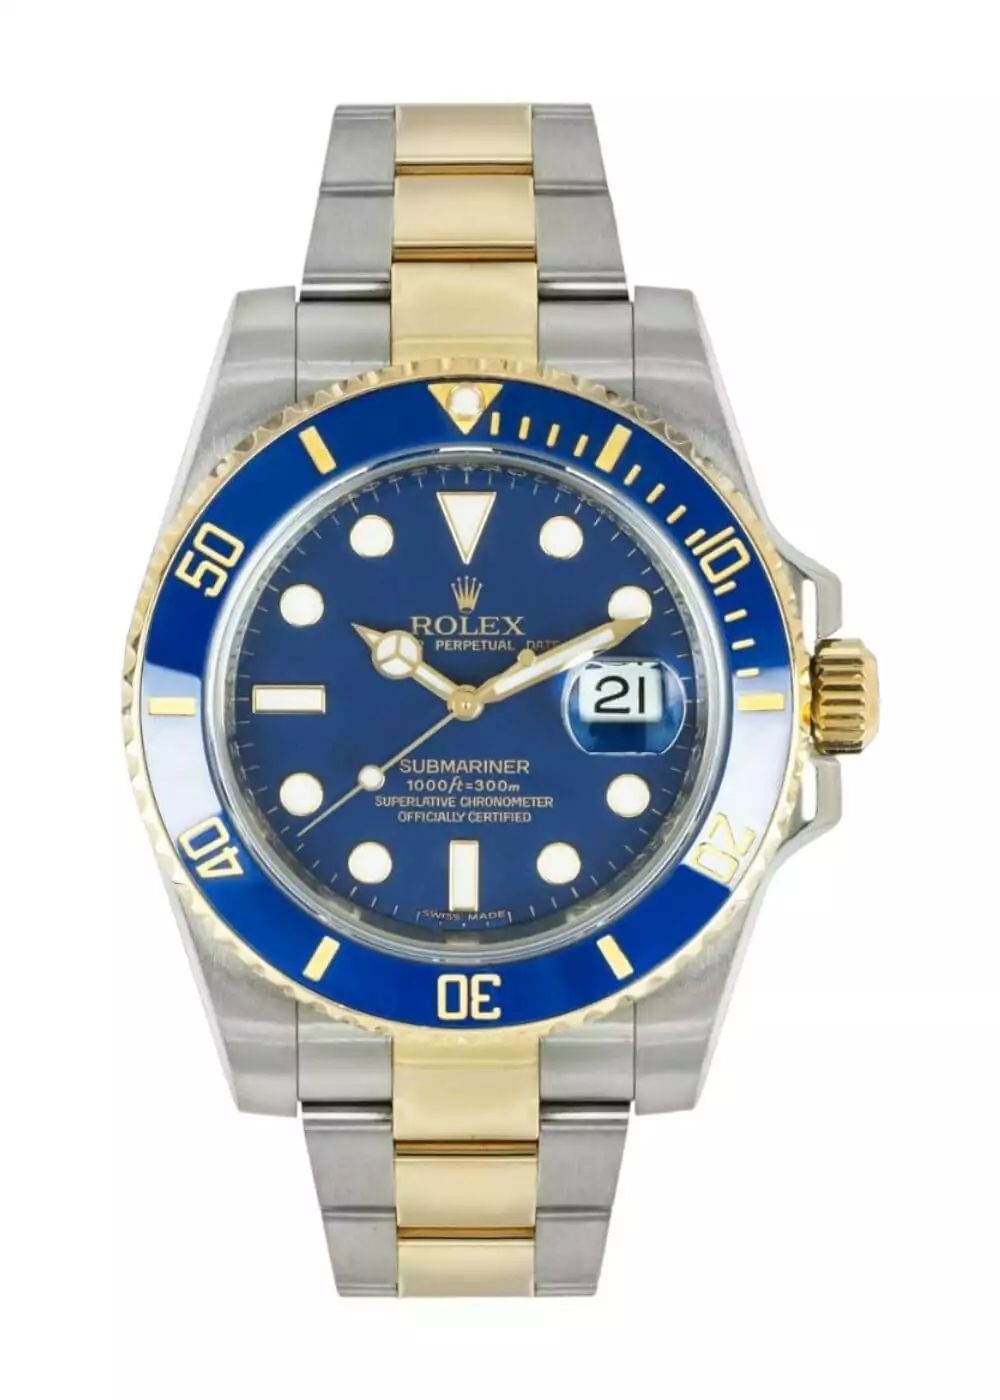 Rolex-Submariner-Watches-1.jpg